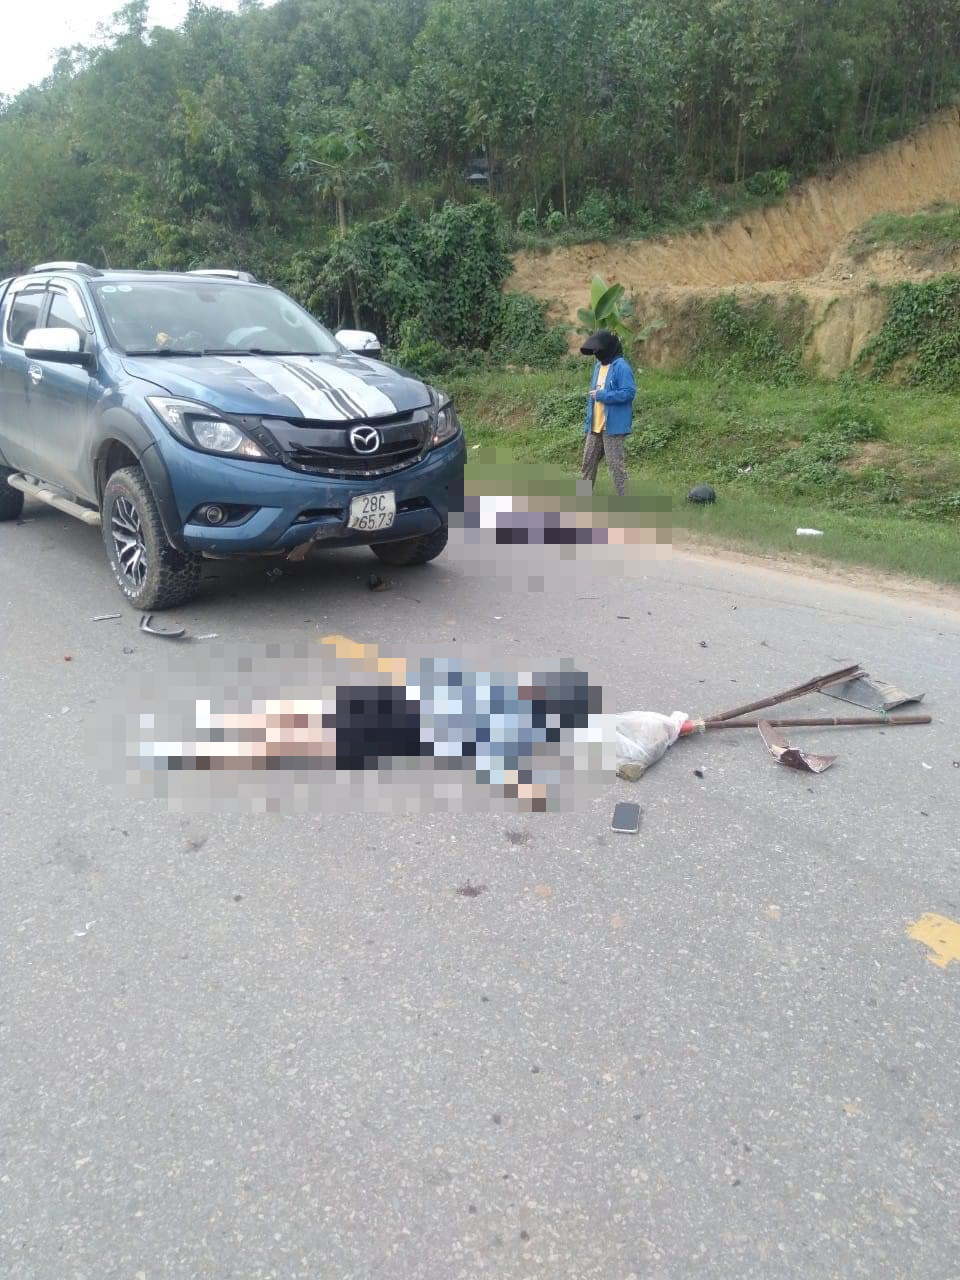 Hòa Bình: Khởi tố lái xe vụ tai nạn khiến 2 người phụ nữ tử vong - Ảnh 2.